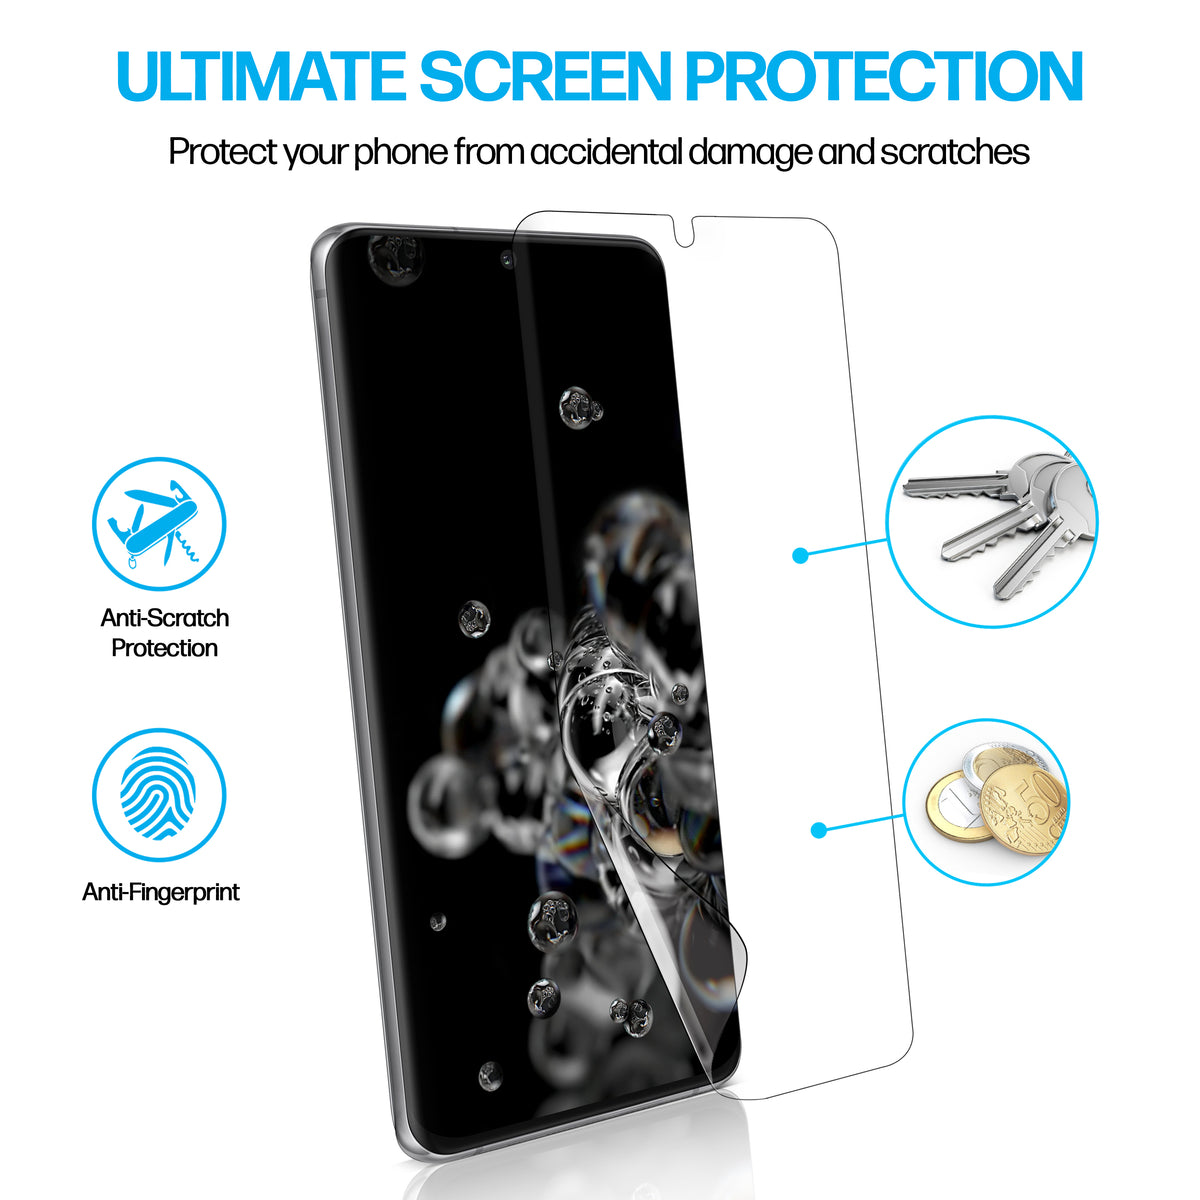 Samsung Galaxy S20 Ultra TPU Anti-Scratch Screen Protector Film [2-Pack] Cover